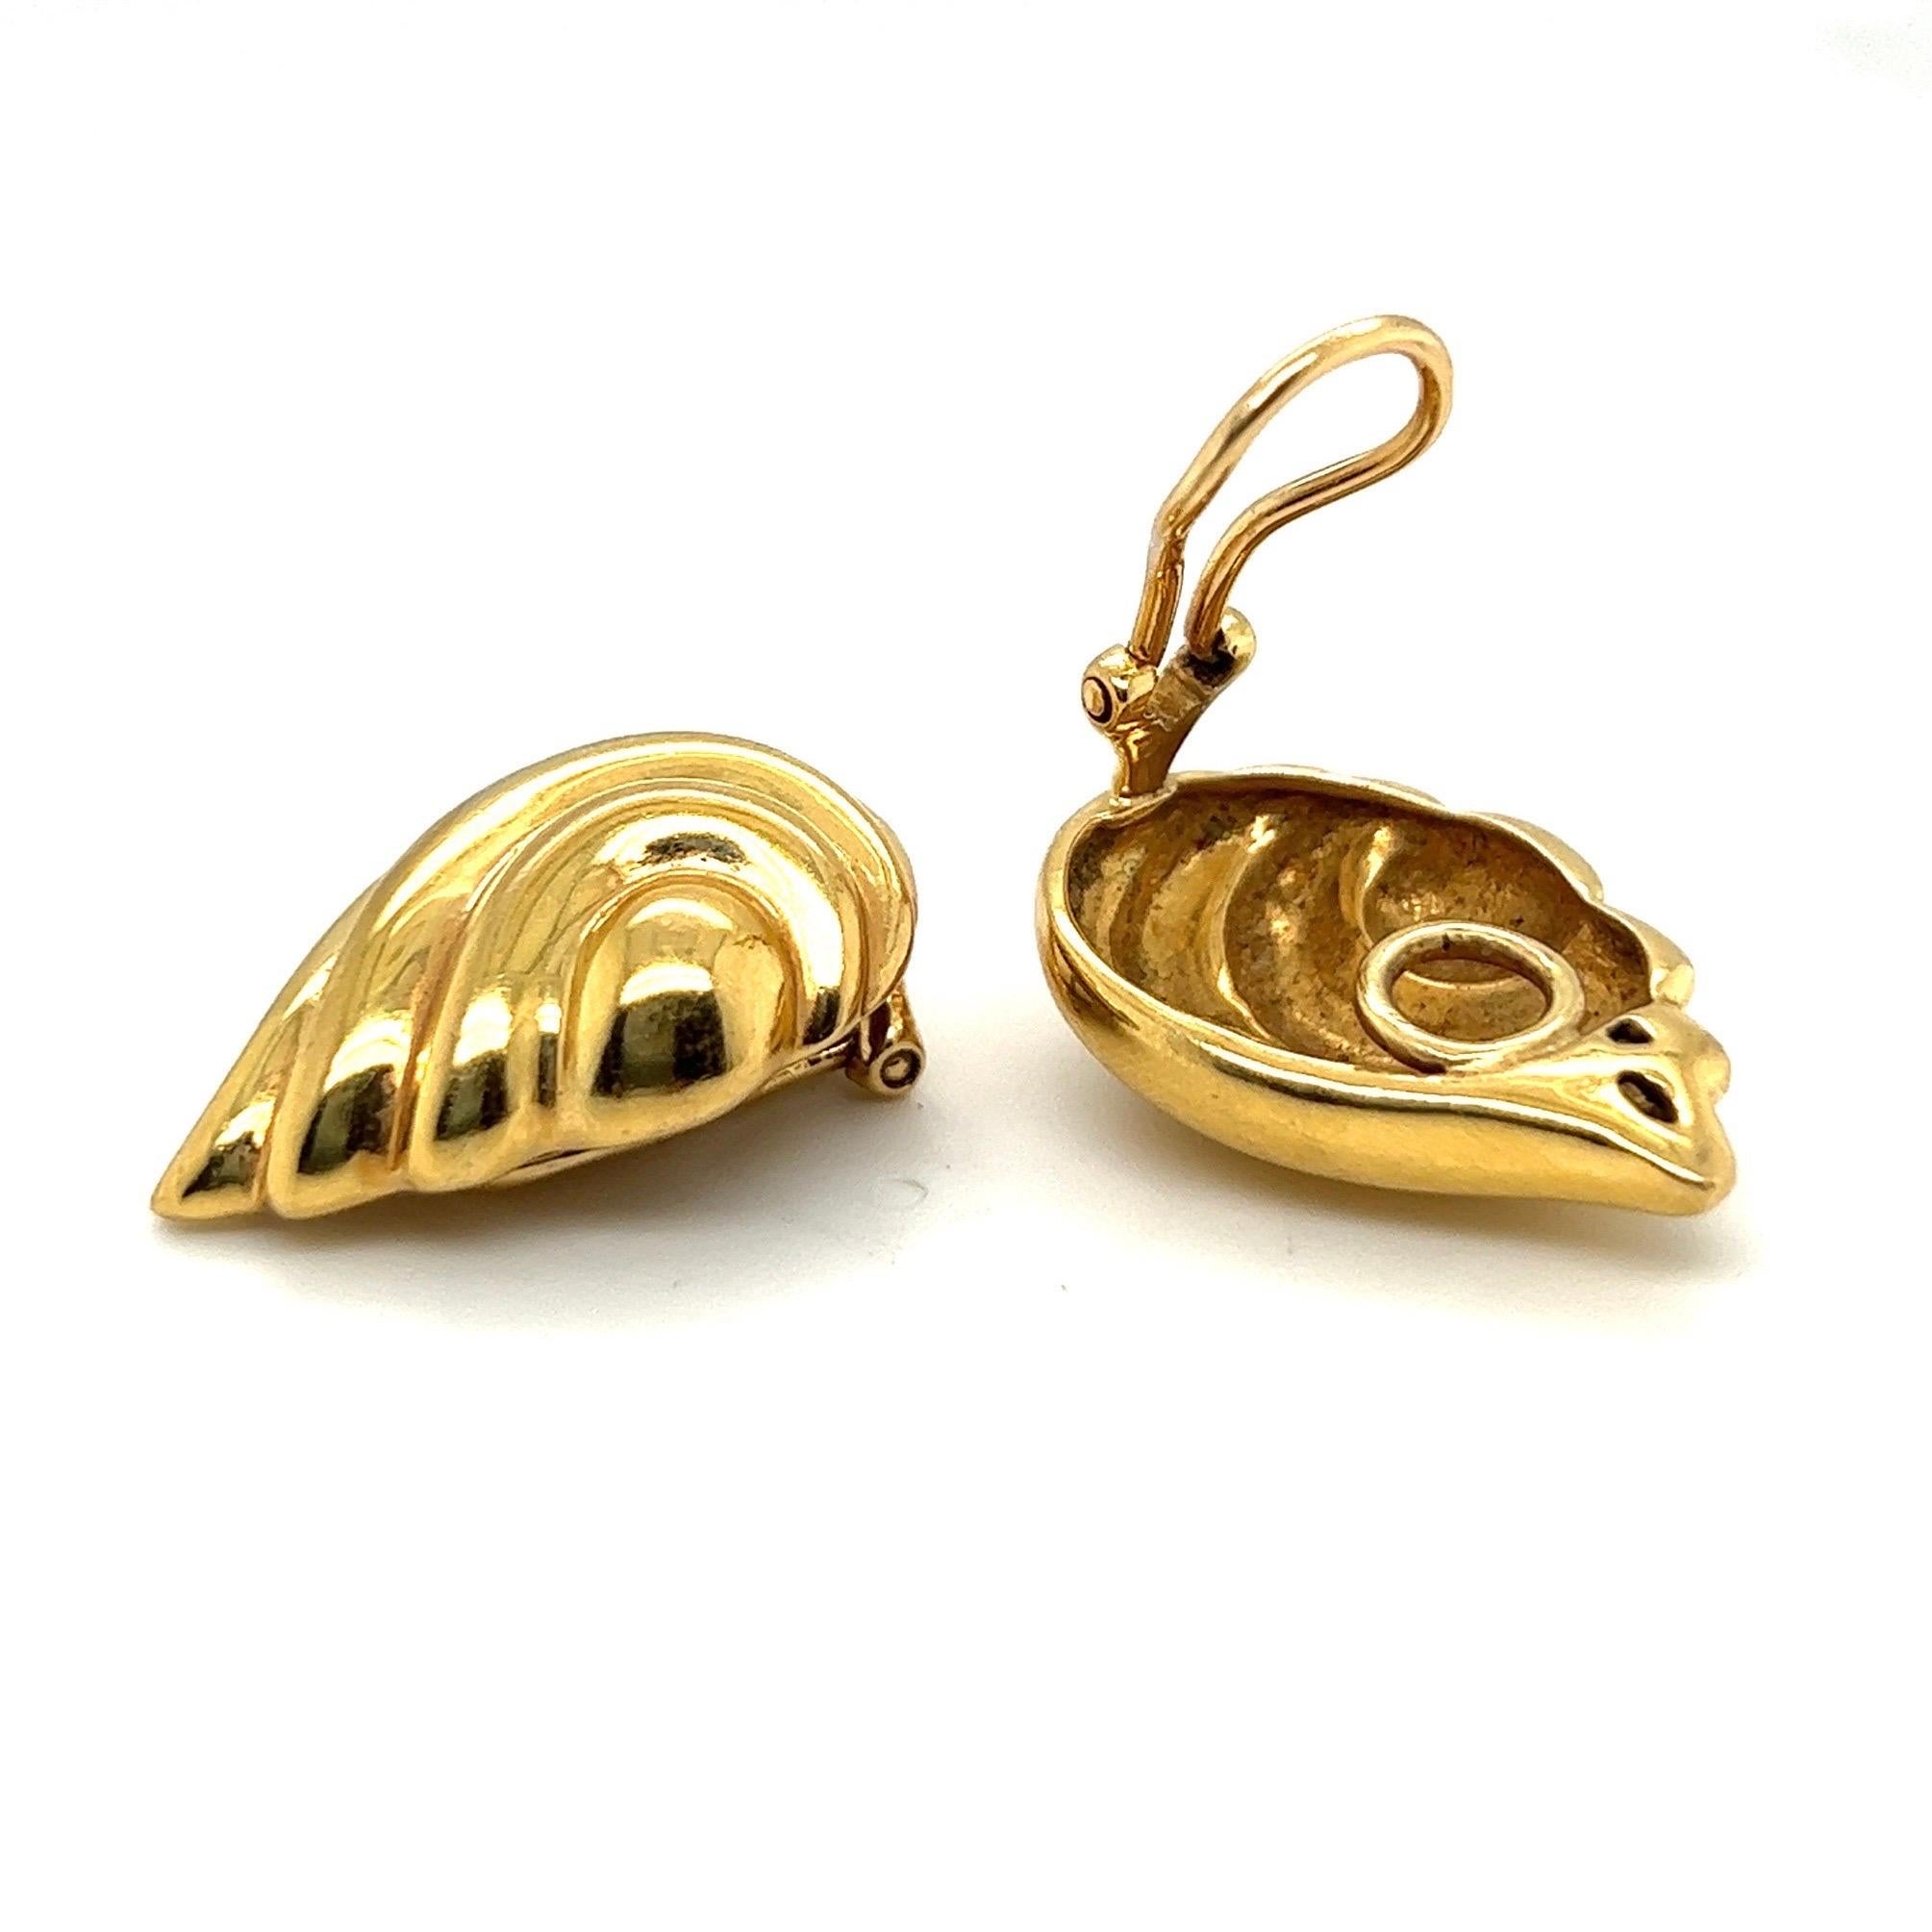 Élégante paire de boucles d'oreilles en or jaune 18 carats de Verdura.
Réalisées en or jaune nervuré 18 carats et conçues comme des feuilles sculptées, ces magnifiques boucles d'oreilles sont destinées à être portées sur le lobe. 
Elles sont